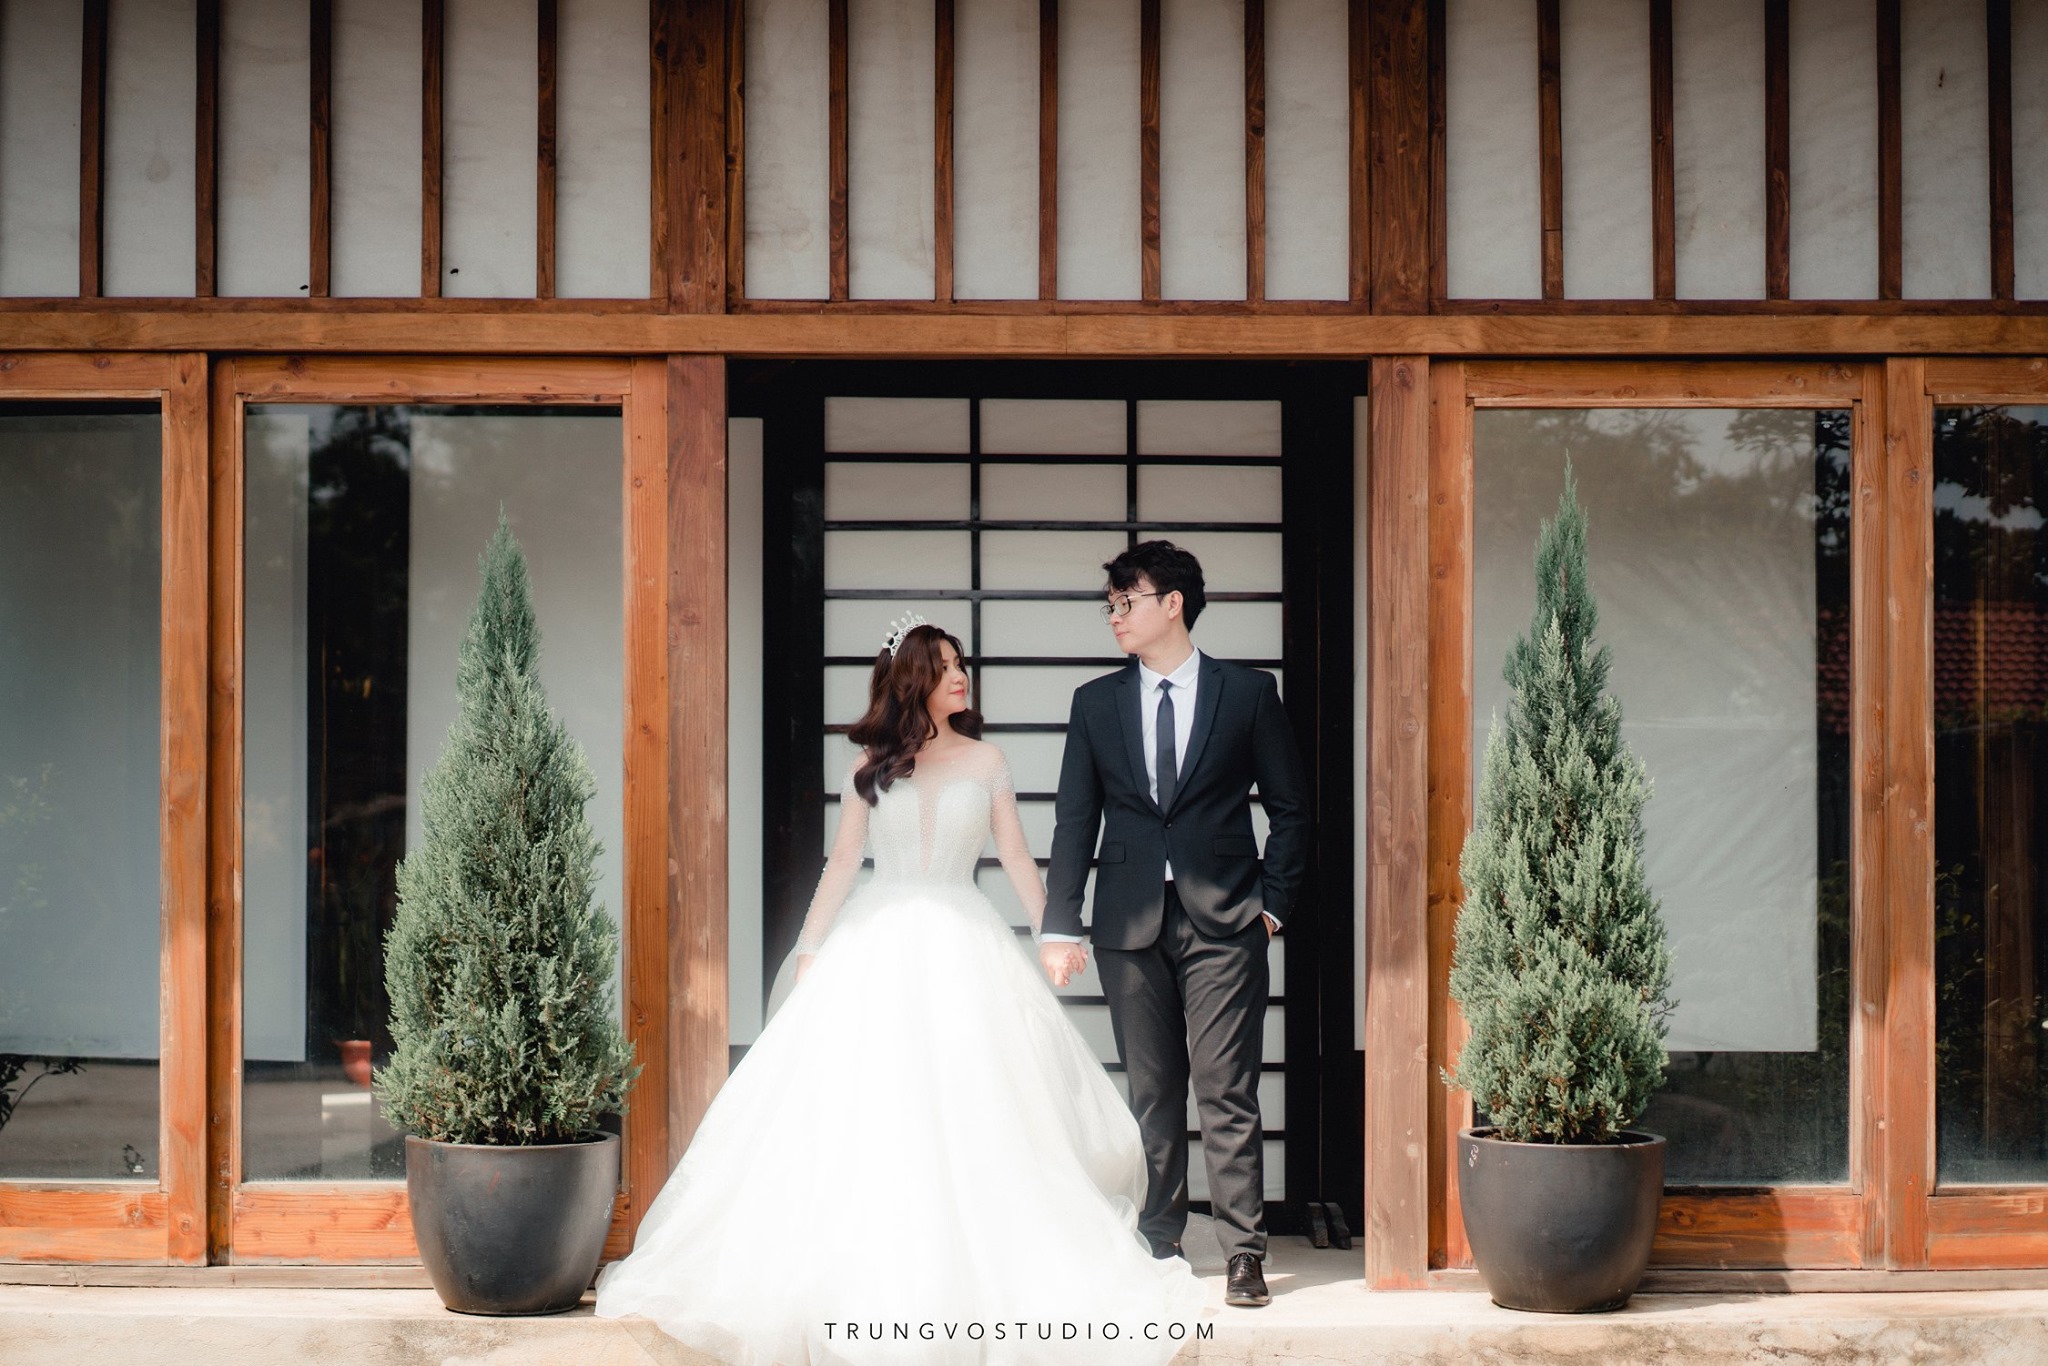 Xếp hạng 10 studio chụp ảnh cưới đẹp nhất Thành phố Hồ Chí Minh - Trung Võ Studio